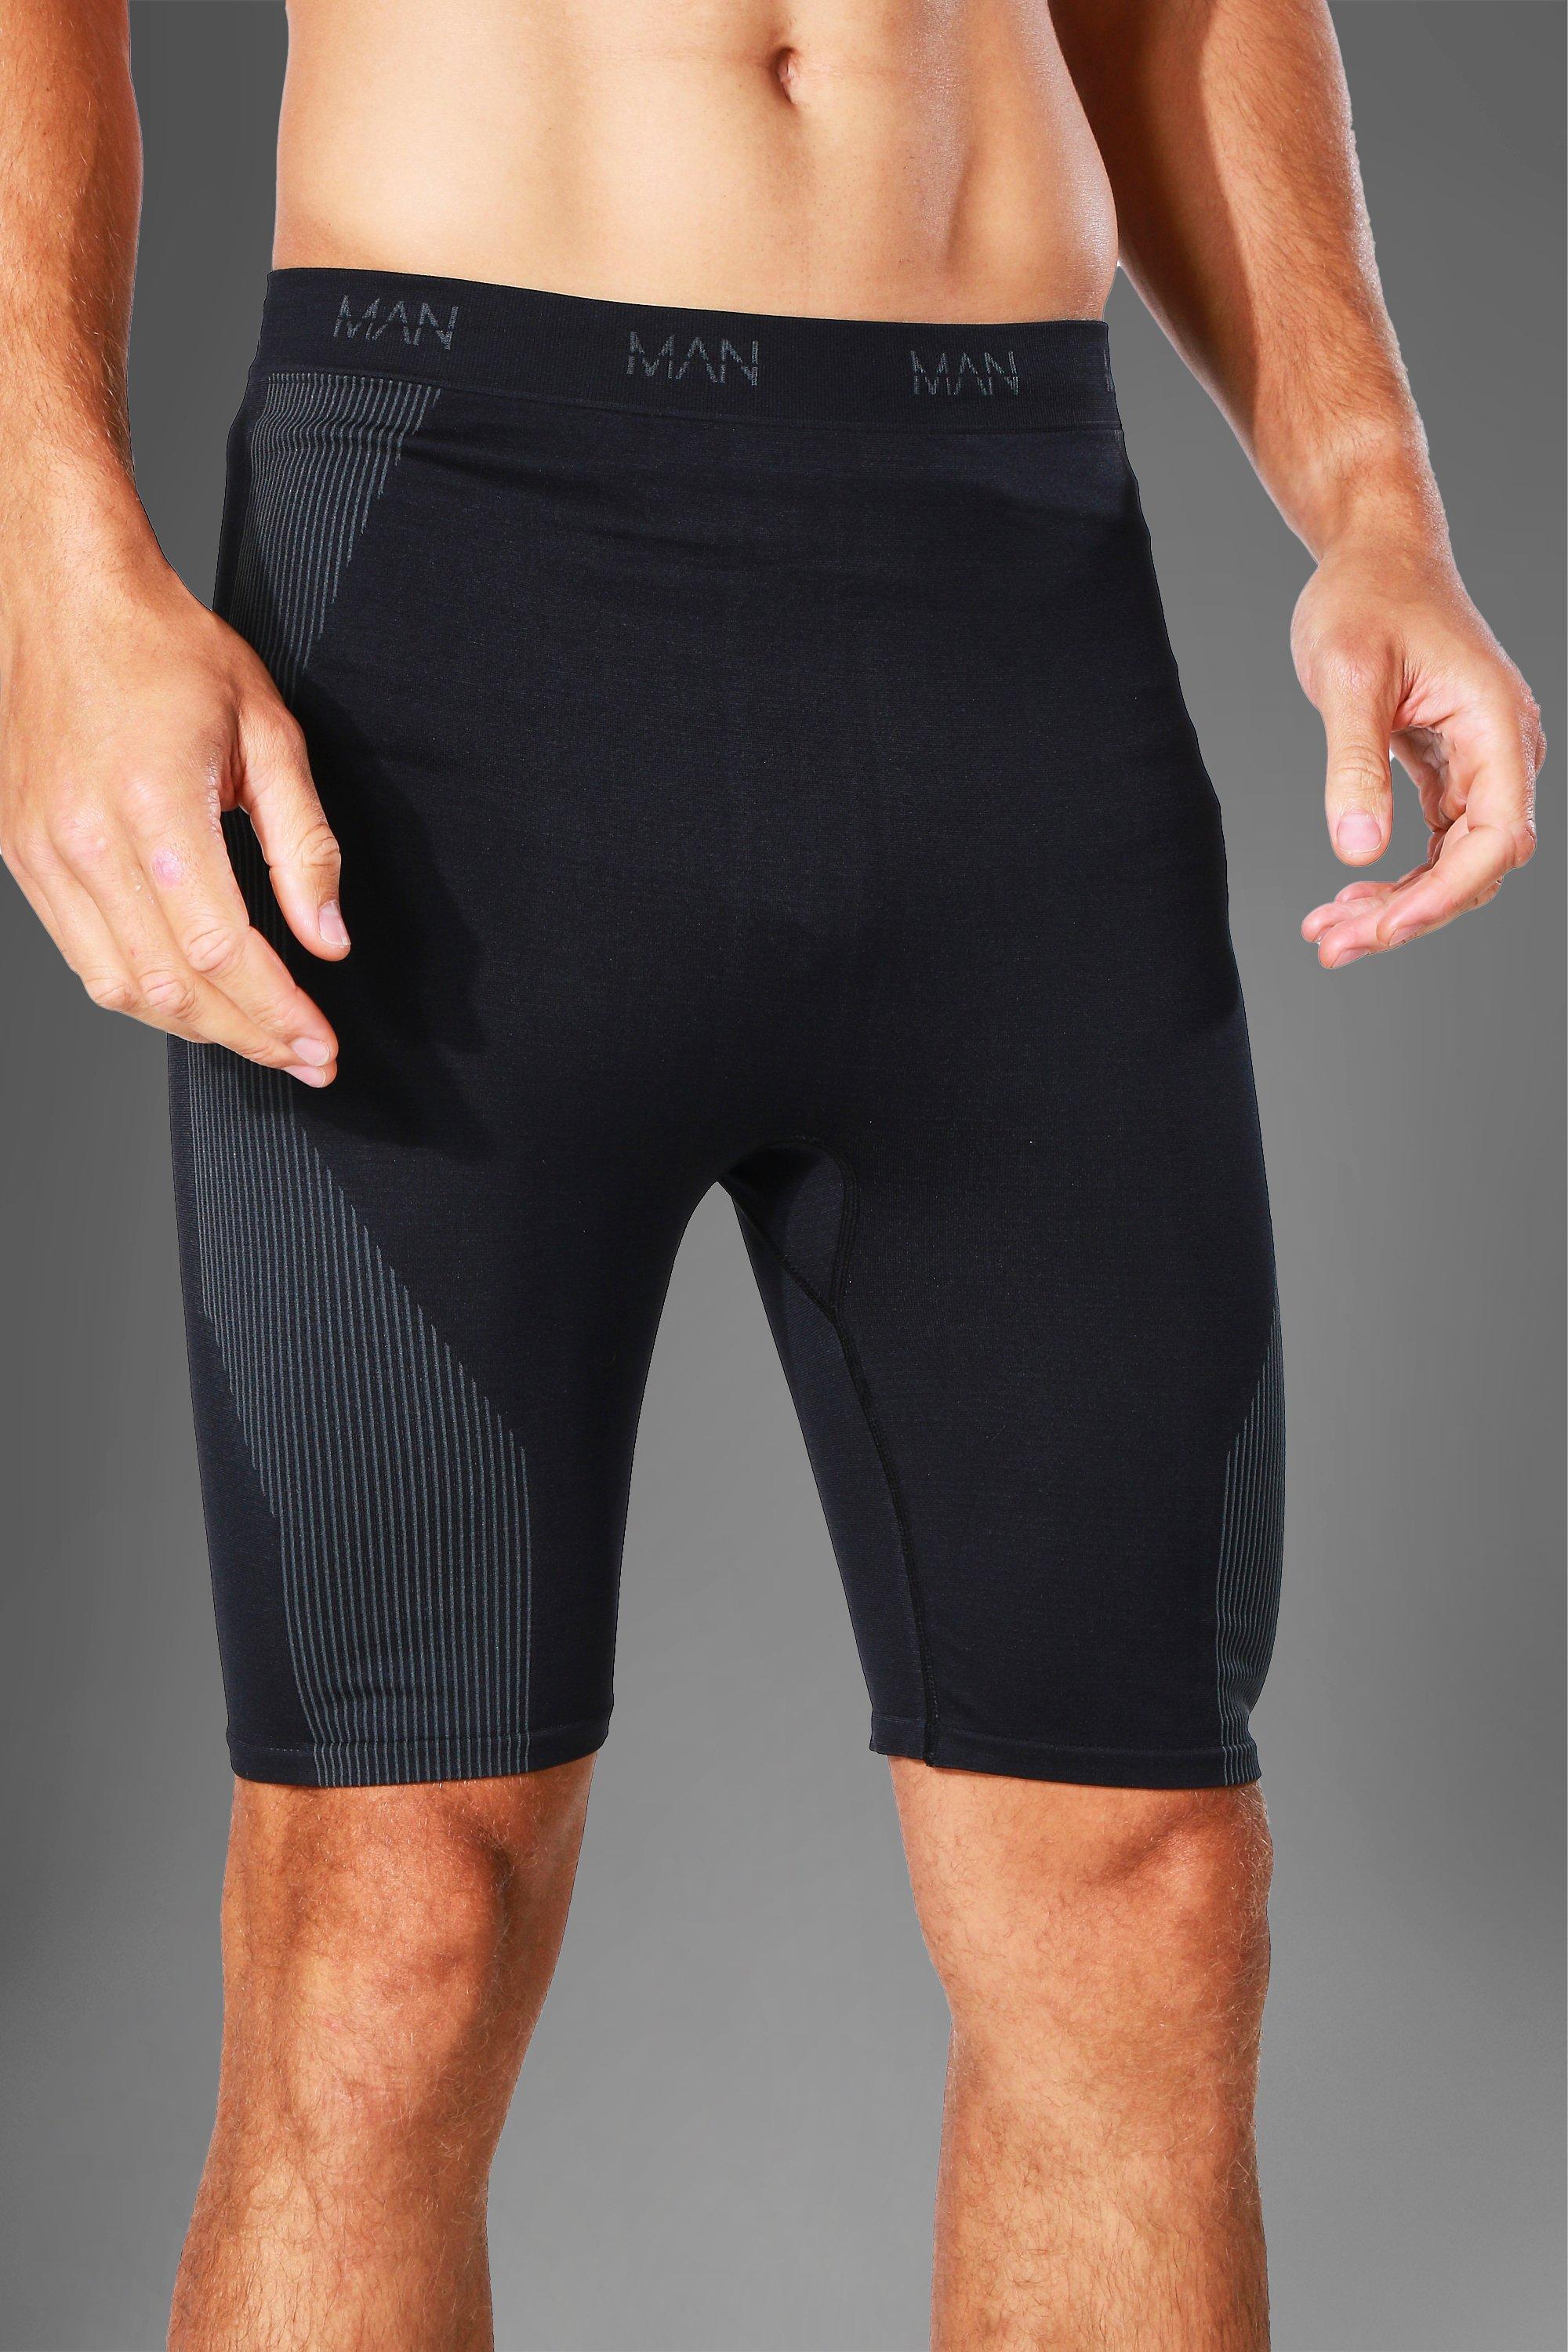 Pantalón corto de ciclista MAN Active sin costuras